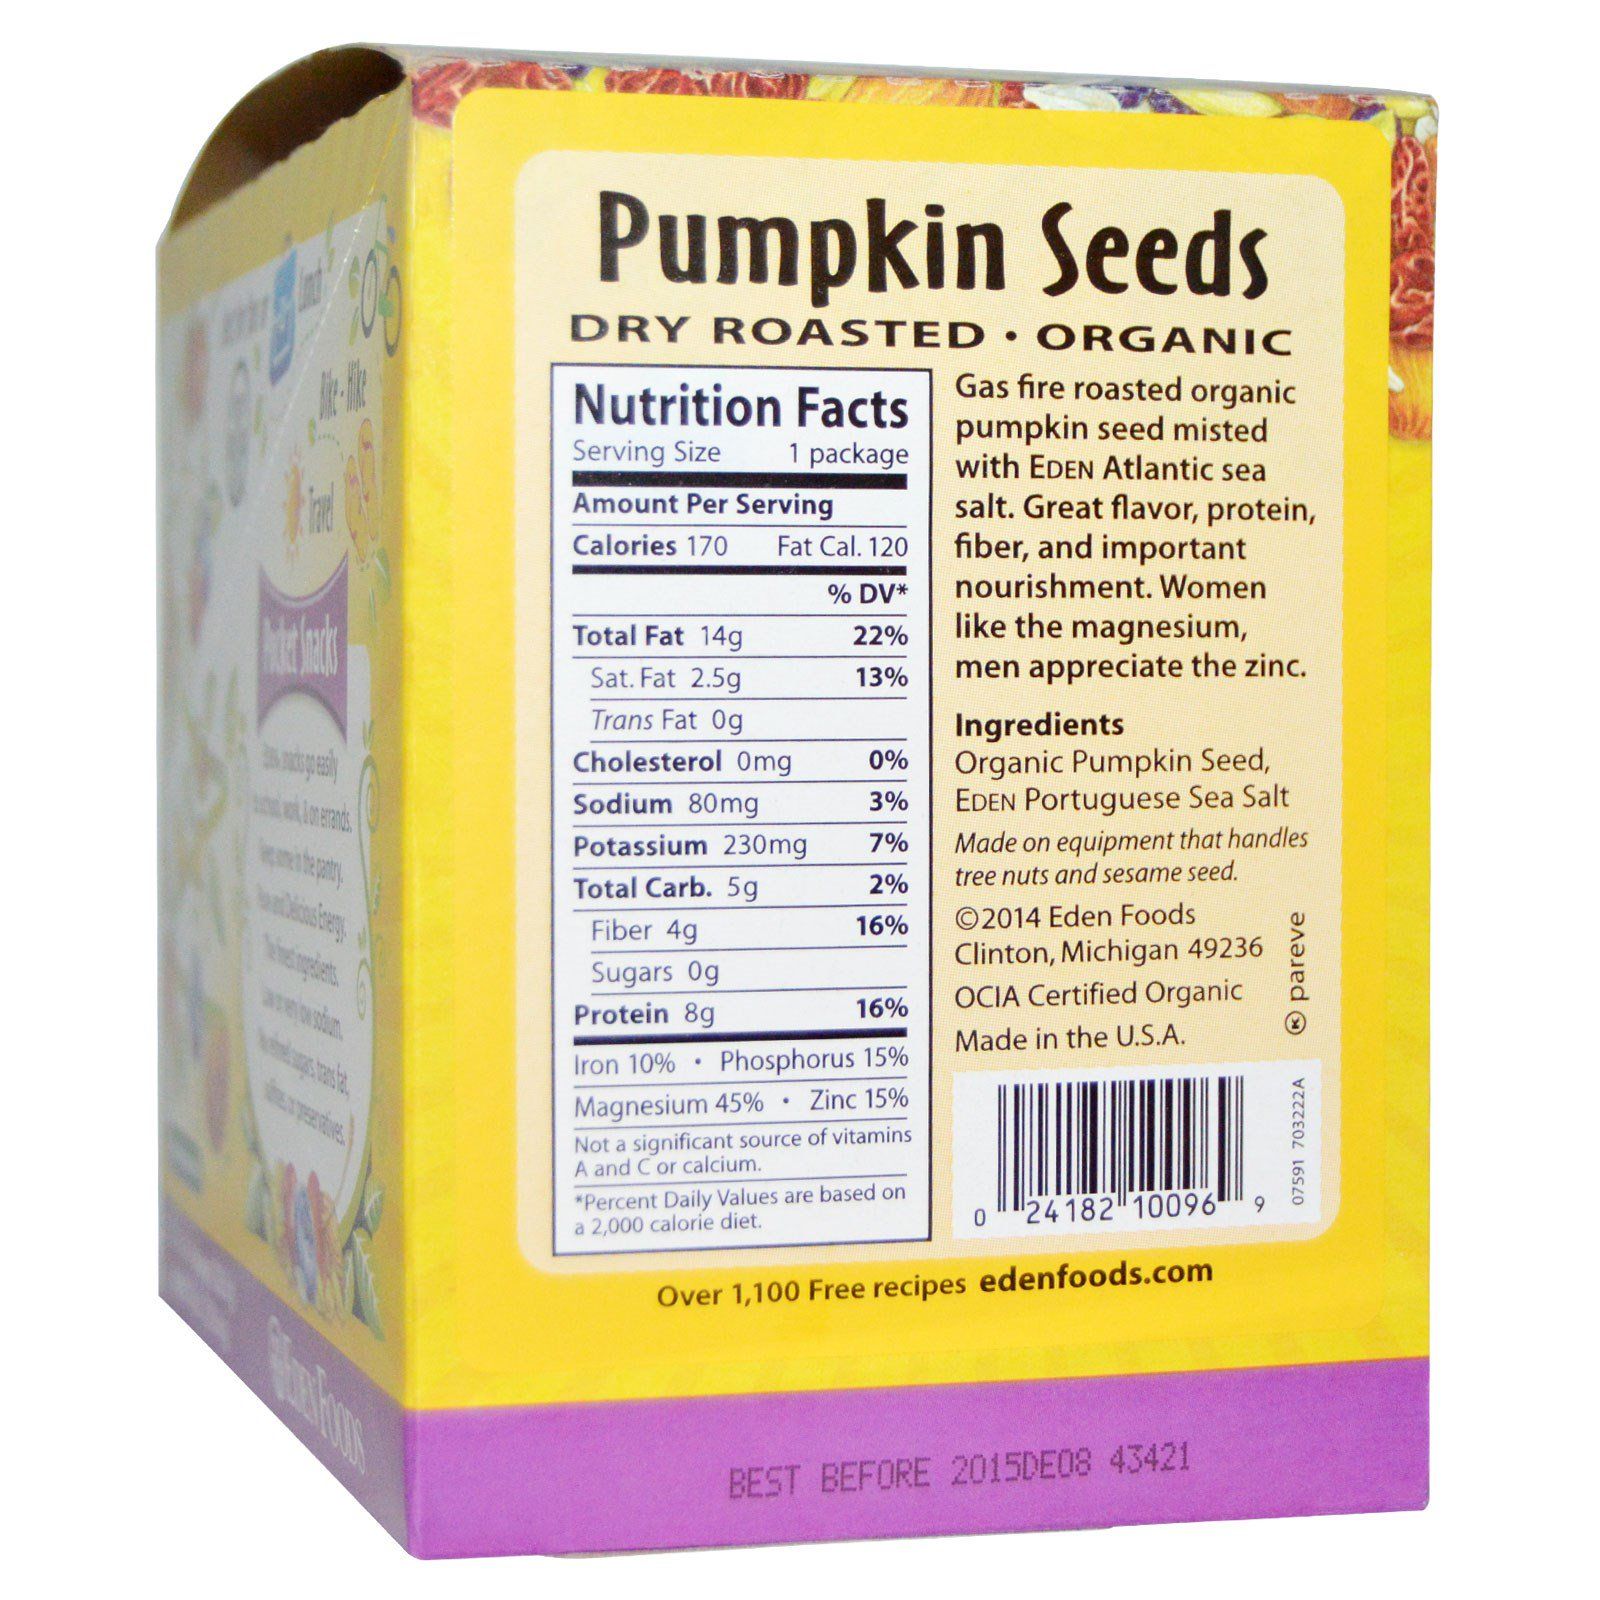 Pumpkin Seeds Nutrition facts.